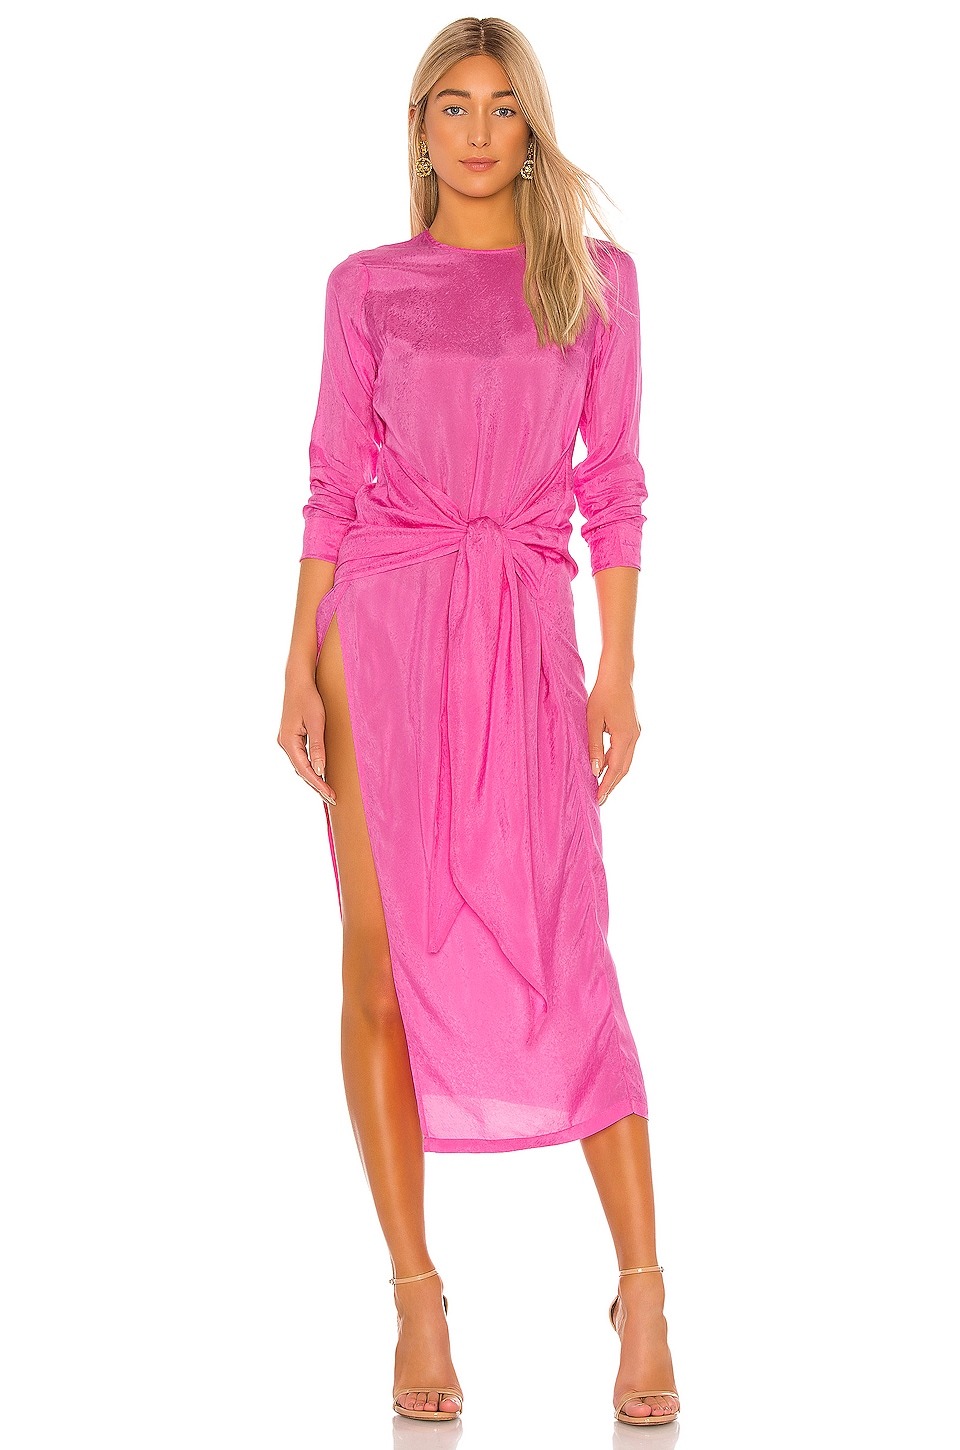 Платье Atoir The Paris, цвет Shocking Pink платье roxy the good direction dress цвет shocking pink hello aloha